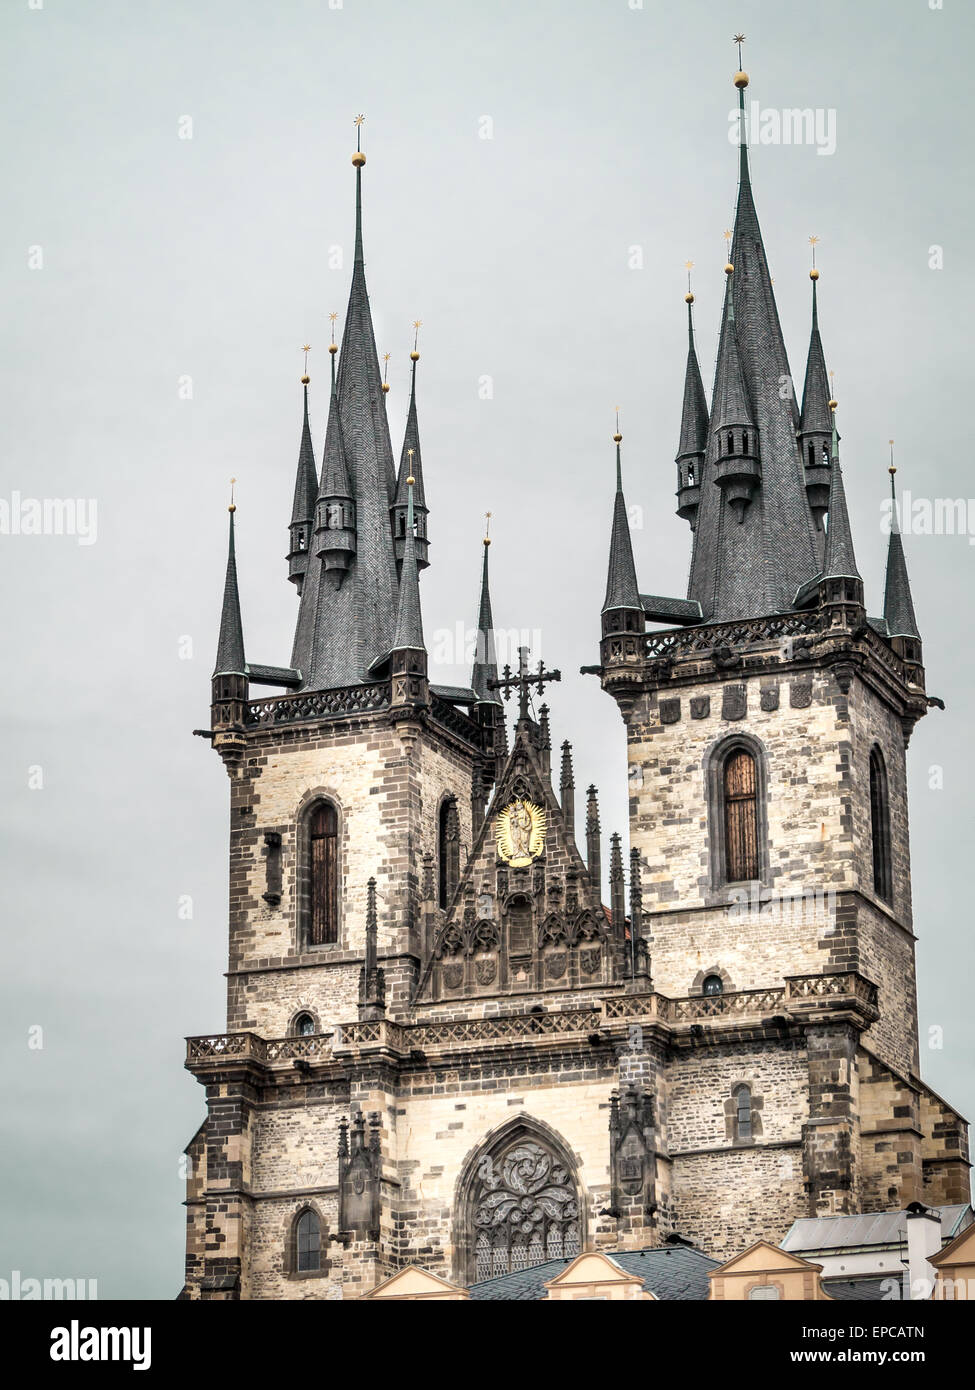 Historische Kirche unserer lieben Frau befindet sich auf dem Altstädter Ring, Praque, Tschechische Republik Stockfoto